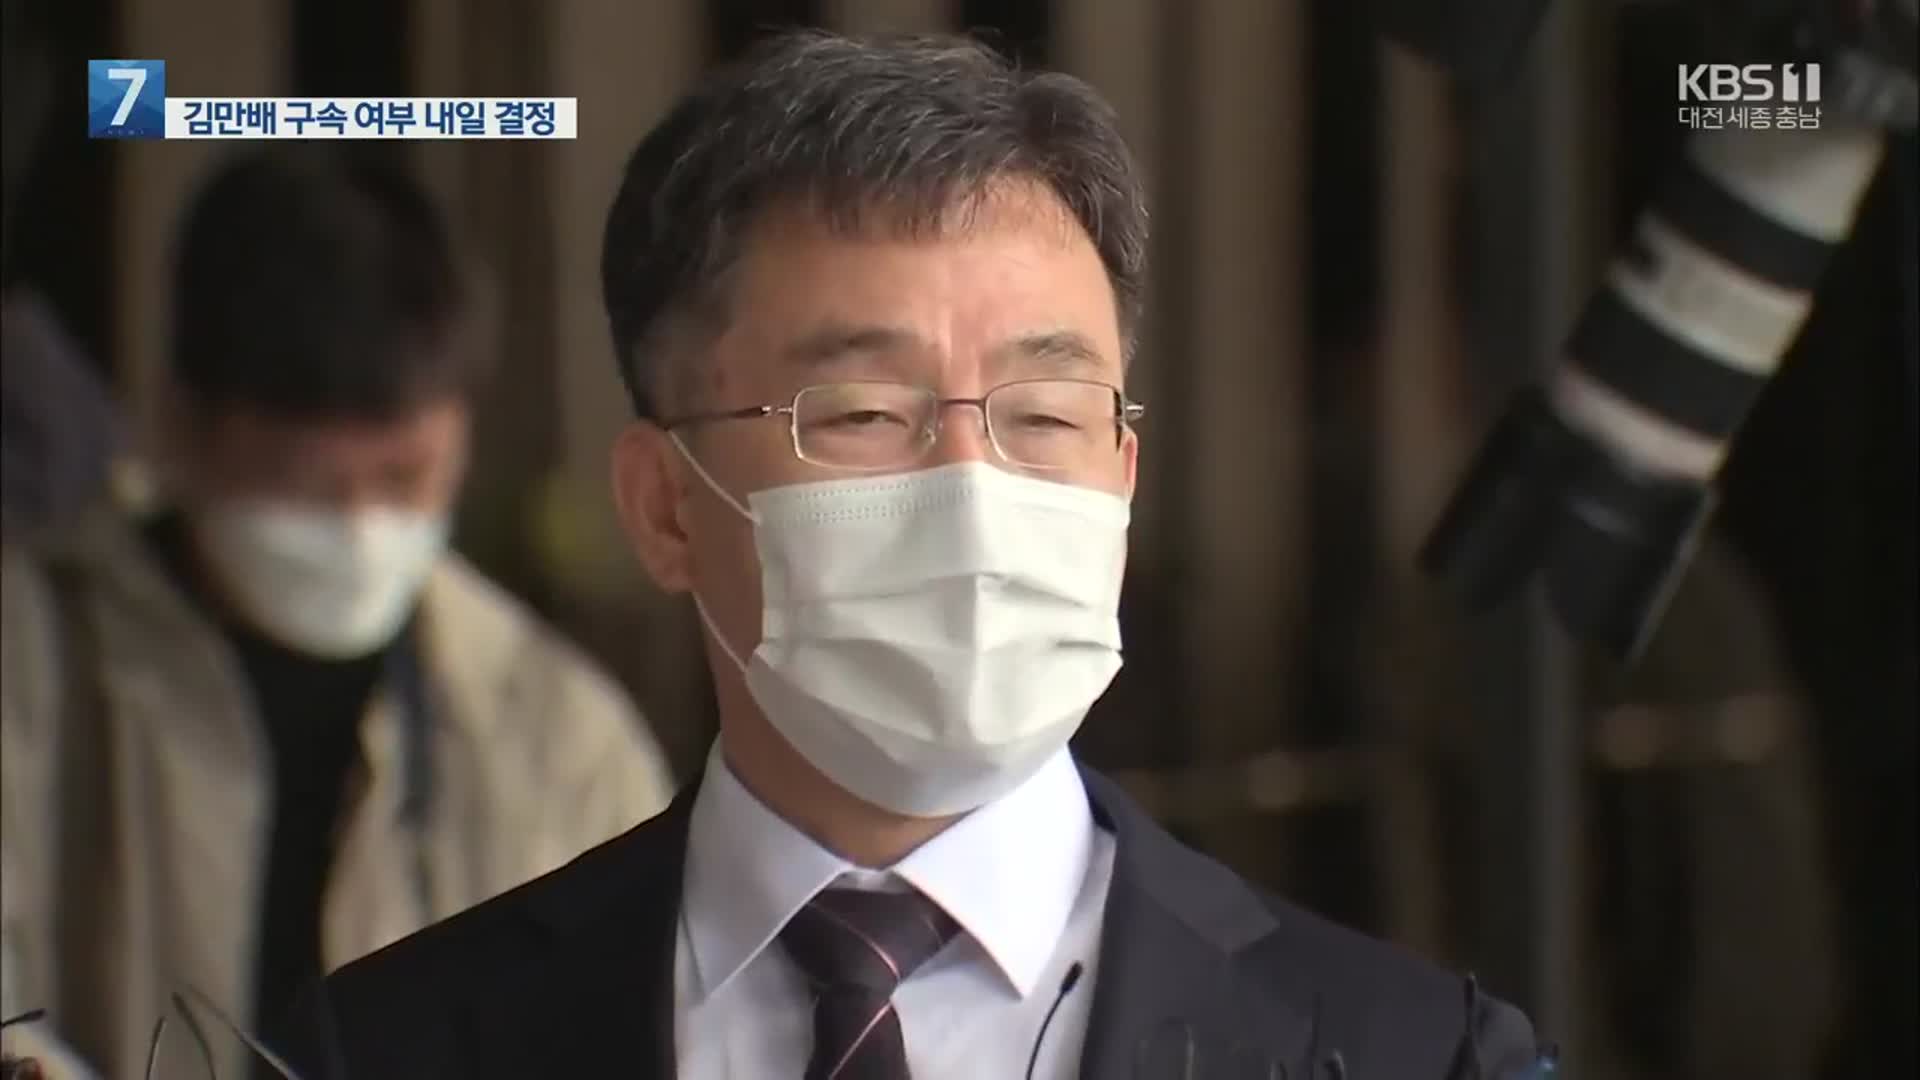 “김만배 발언 맞아” vs “허위·과장”…검찰 입증 초점은?